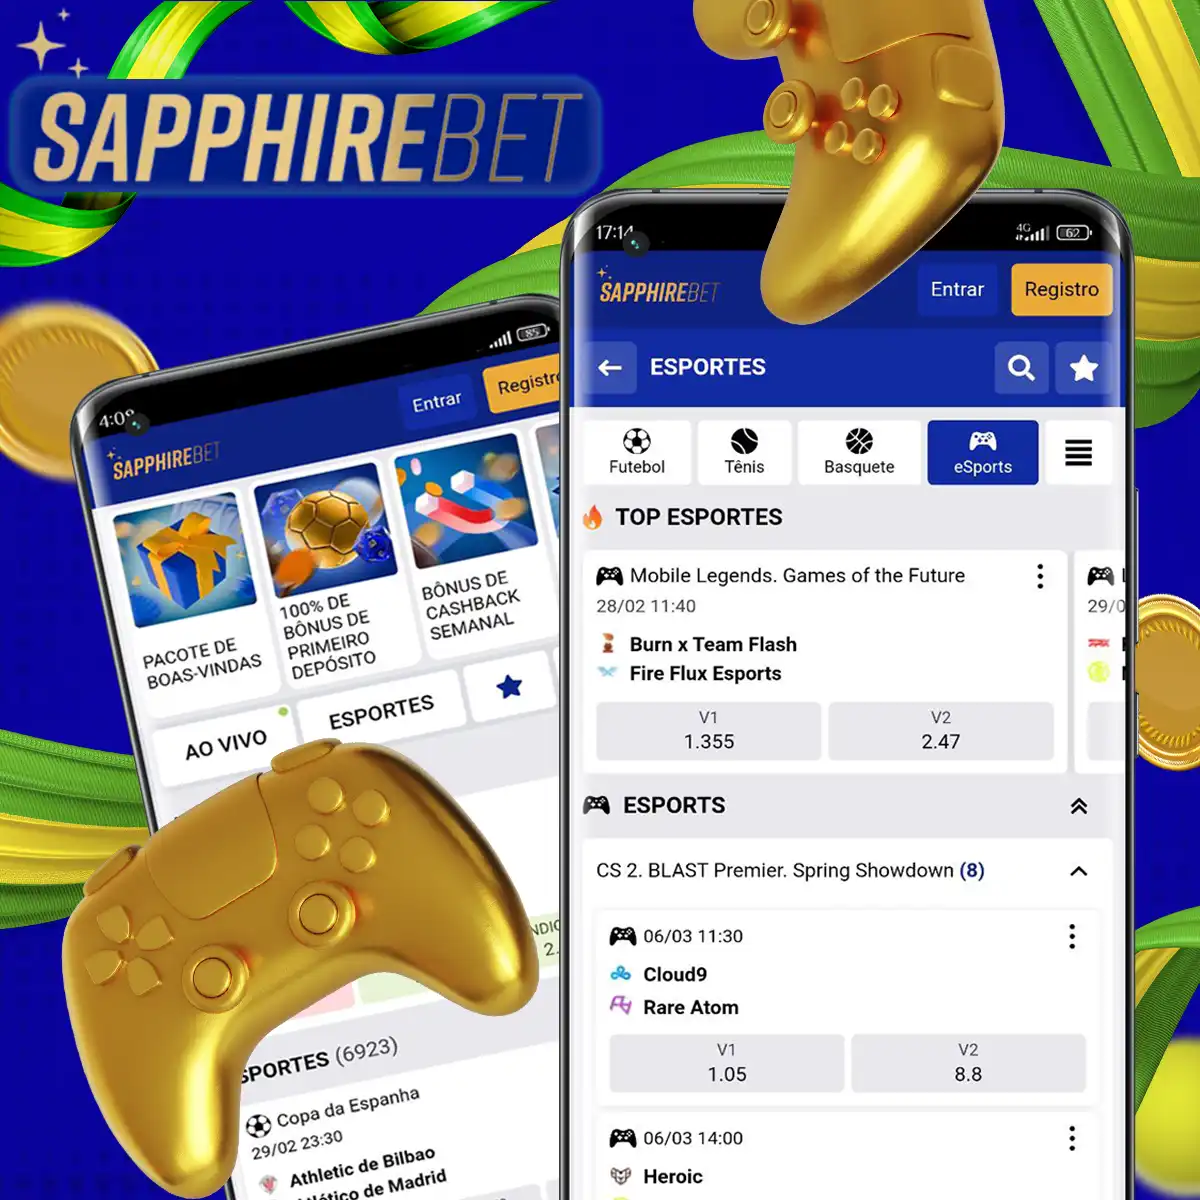 Apostas em eSports on-line com boas chances nas casas de apostas Sapphirebet